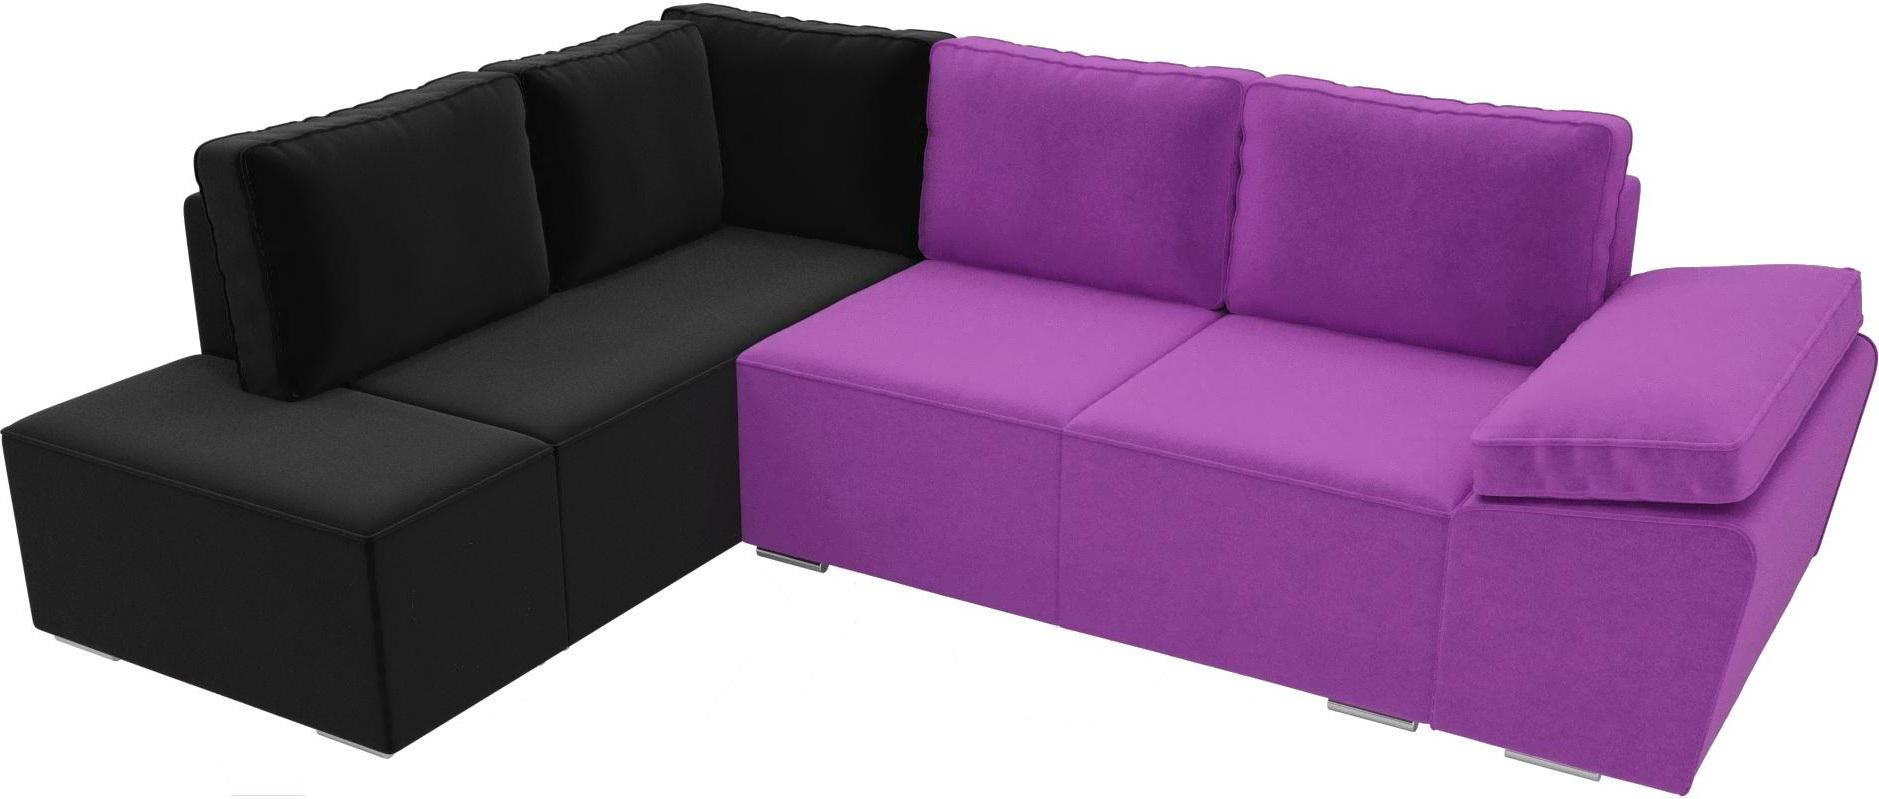 

Комплект мягкой мебели Лига Диванов Хавьер левый 101257 микровельвет фиолетовый/черный, Комплект мягкой мебели Лига Диванов Хавьер 101257 левый микровельвет фиолетовый/черный